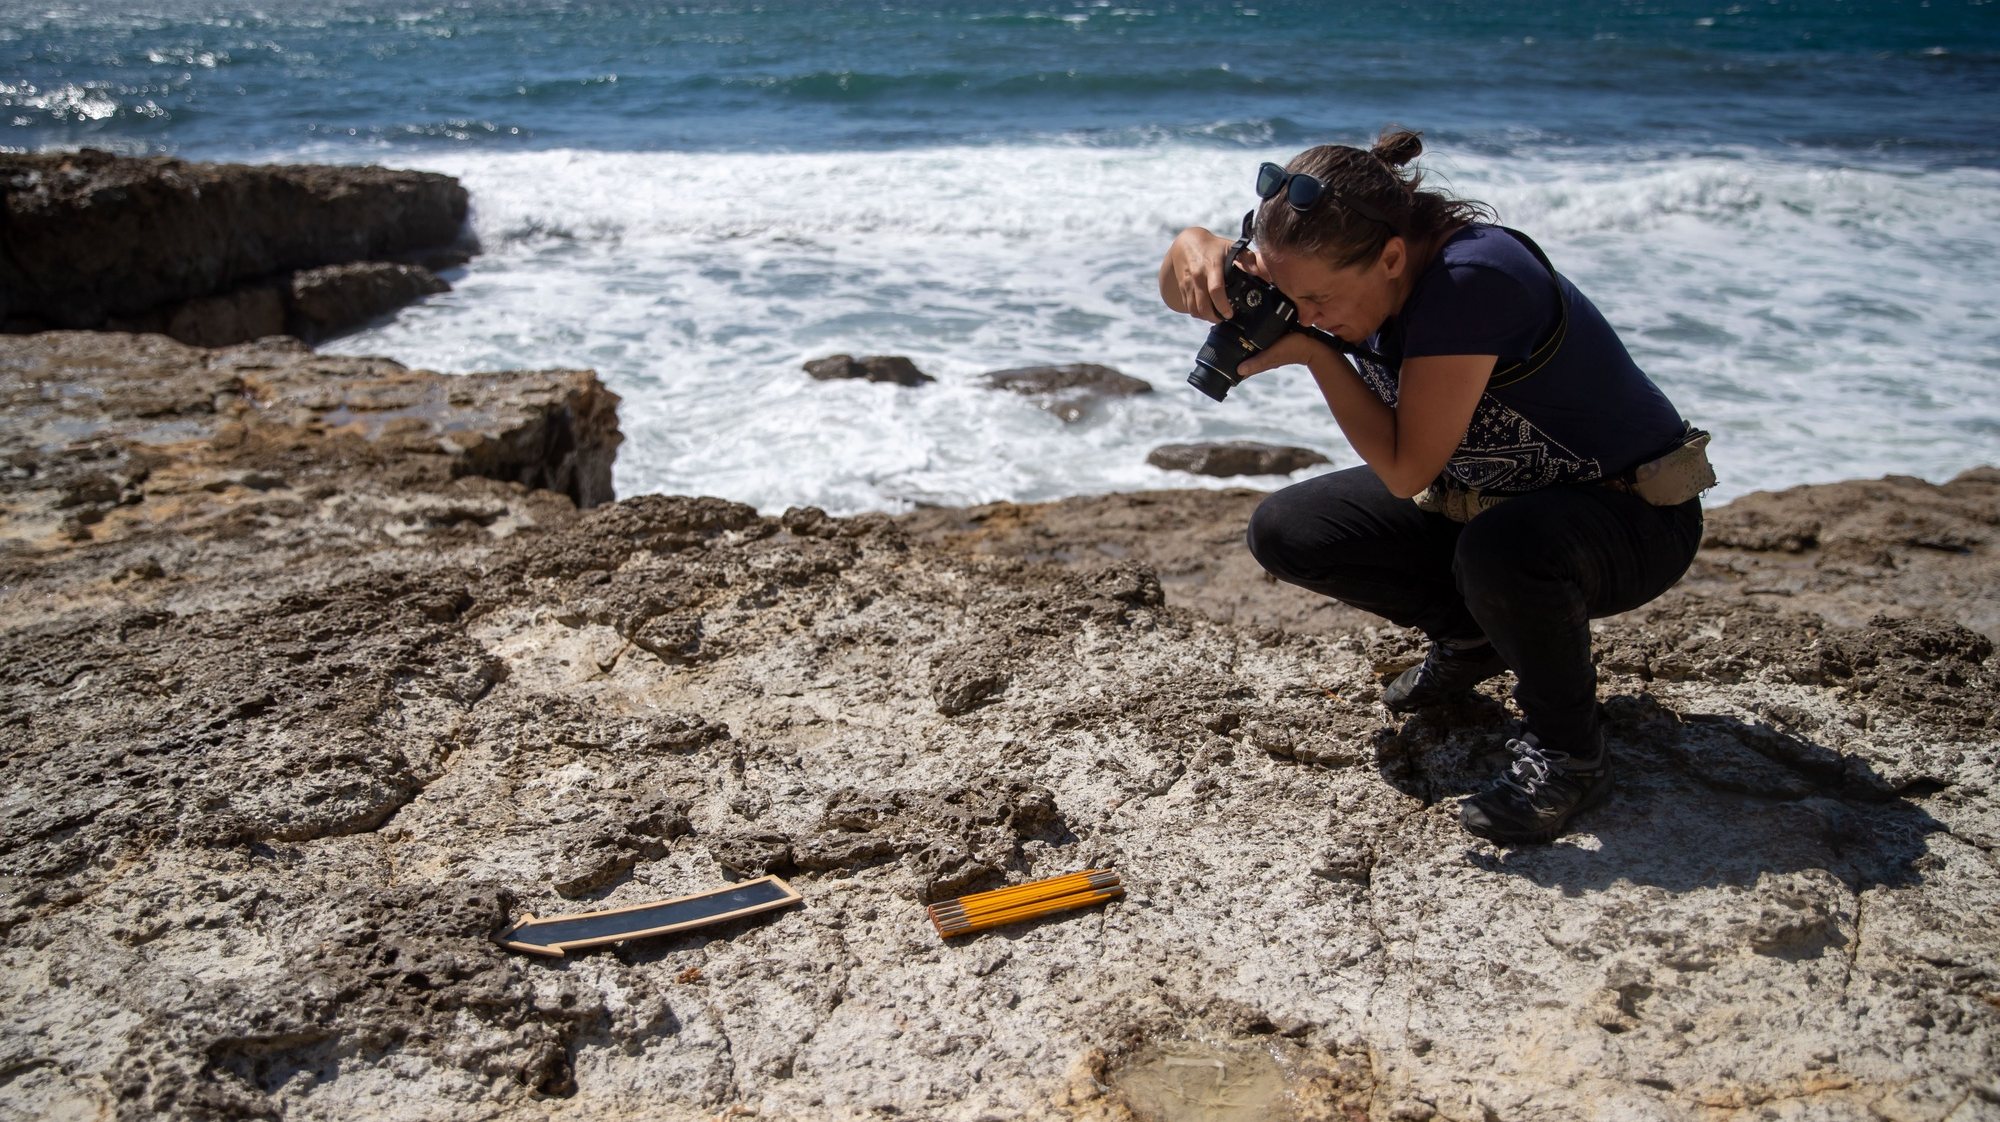 Investigadores que se encontram a desenvolver trabalho de campo na zona do Cabo Espichel, Sesimbra, acreditam que é possível encontrar ovos de dinossauro naquele local, à semelhança do que aconteceu na Lourinhã, e também de crocodilo, Sesimbra, 08 de julho de 2021. As camadas geológicas que constituem as escarpas do Cabo Espichel revelam, ao olhar do geólogo, potencial para encontrar ossos e ovos dos animais que há 129 milhões de anos ali deixaram impressas as pegadas que os investigadores estão hoje a seguir. (ACOMPANHA TEXTO DE 15 DE JULHO DE 2021). JOSÉ SENA GOULÃO/LUSA